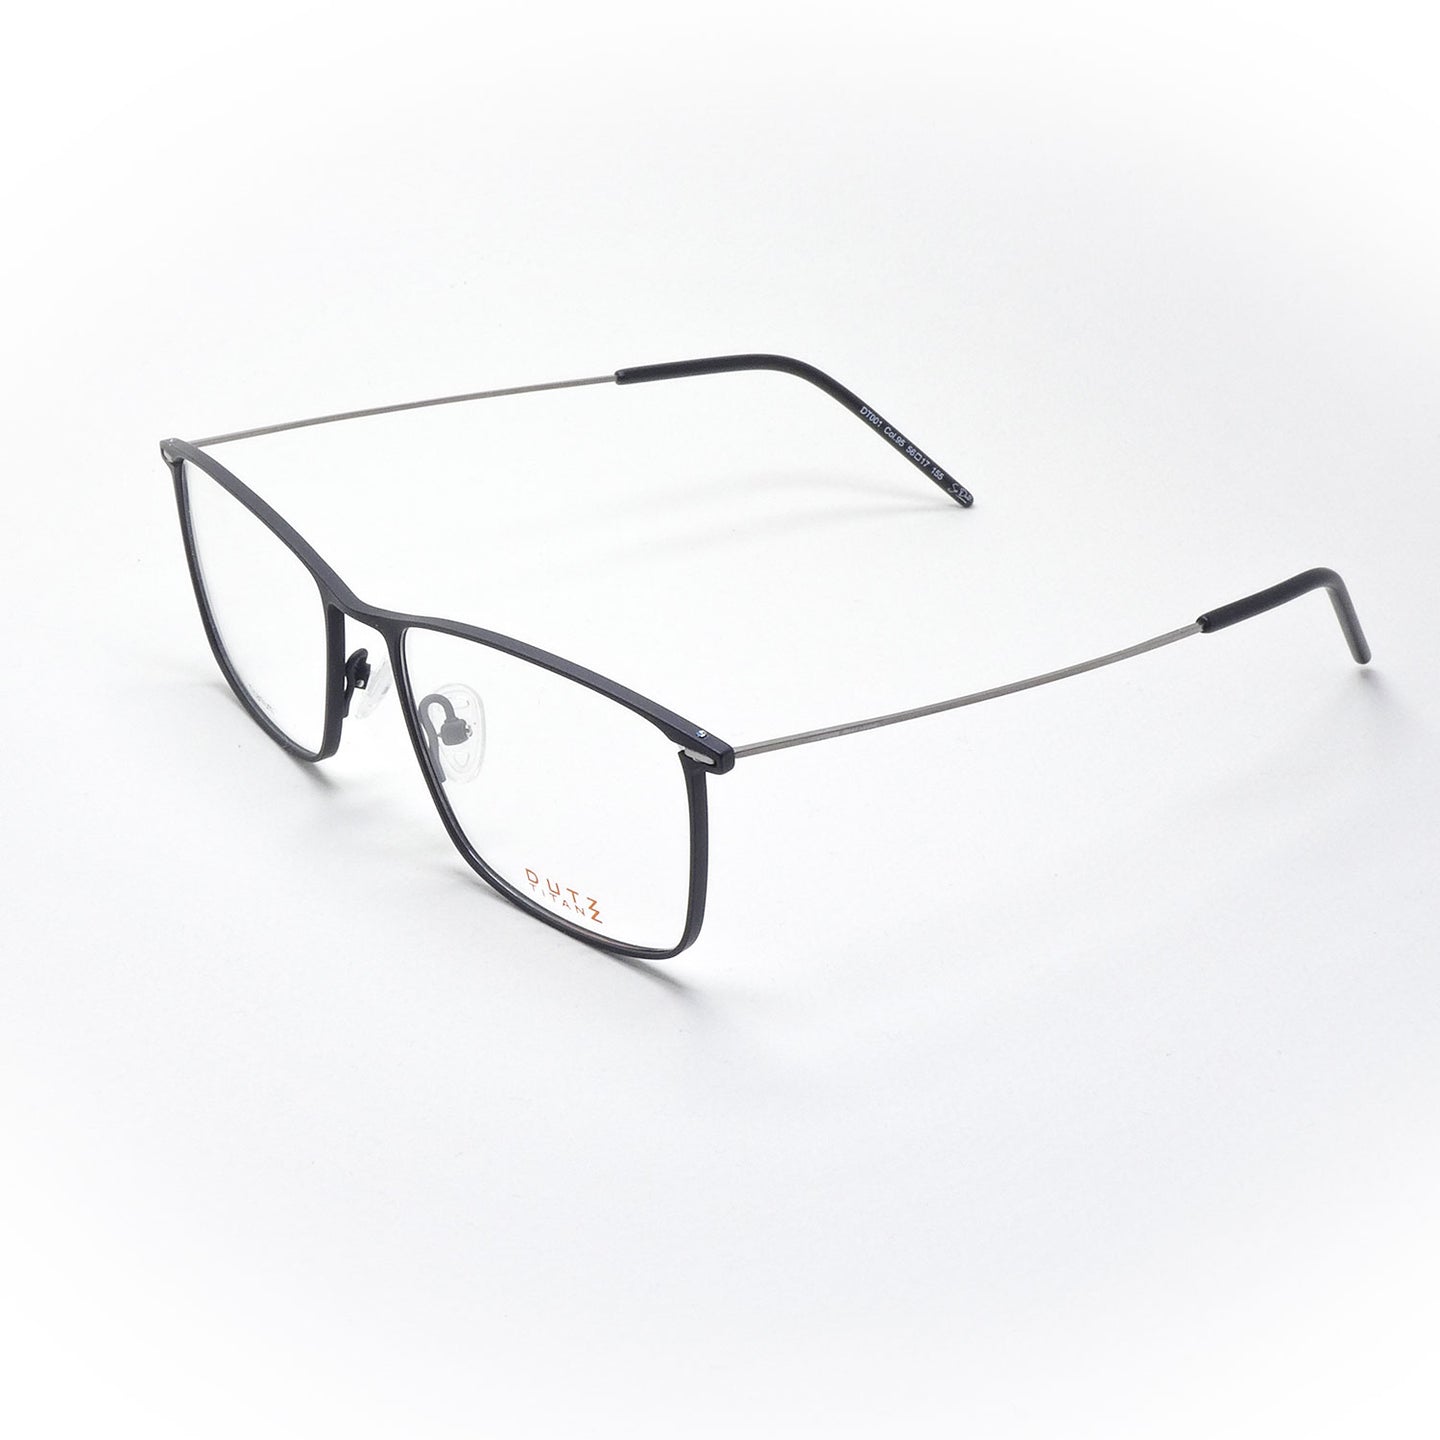 glasses DUTZ model DT 001 color 95